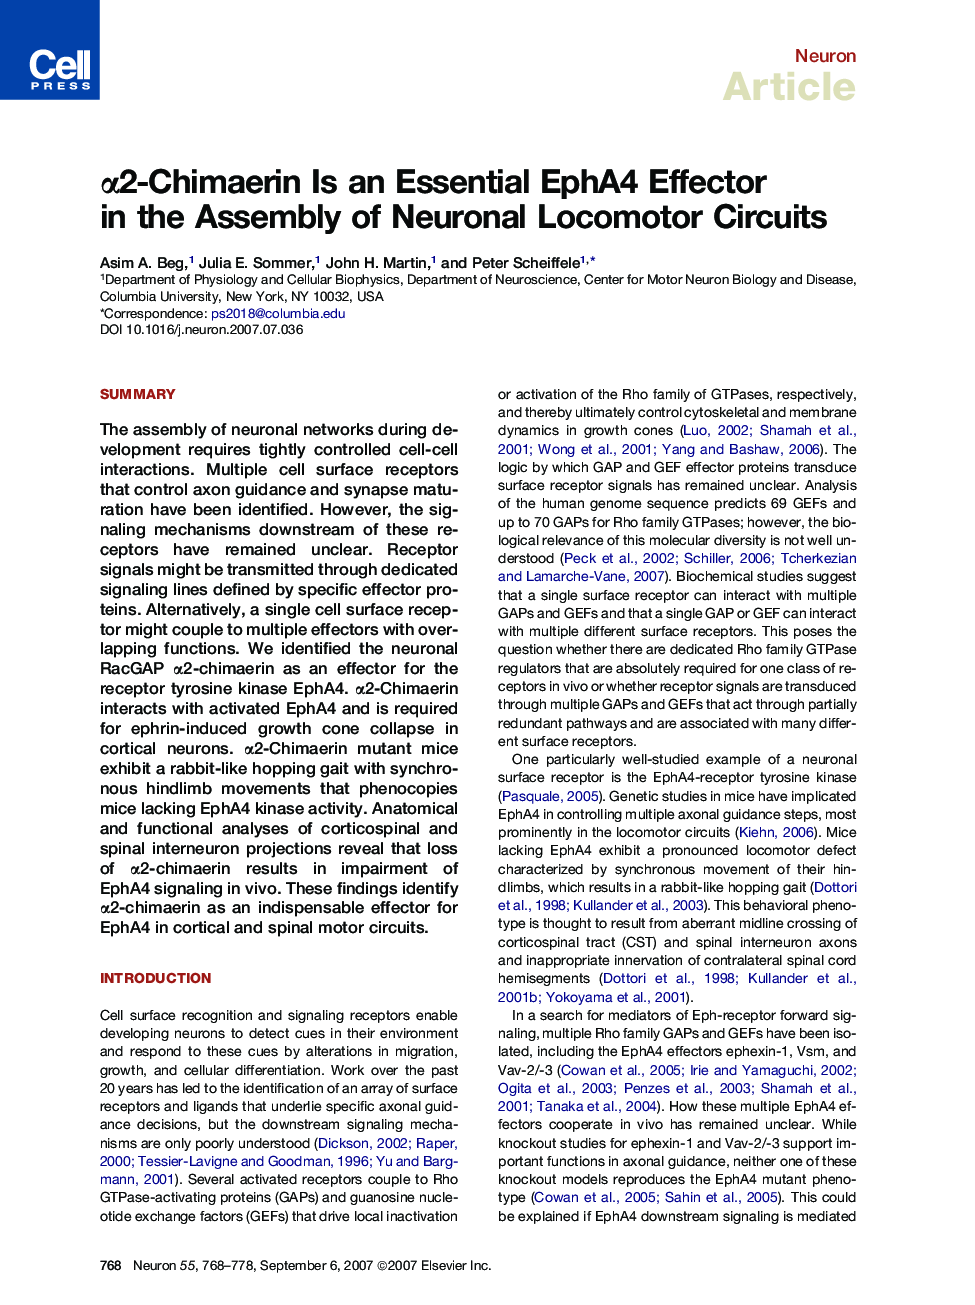 α2-Chimaerin Is an Essential EphA4 Effector in the Assembly of Neuronal Locomotor Circuits